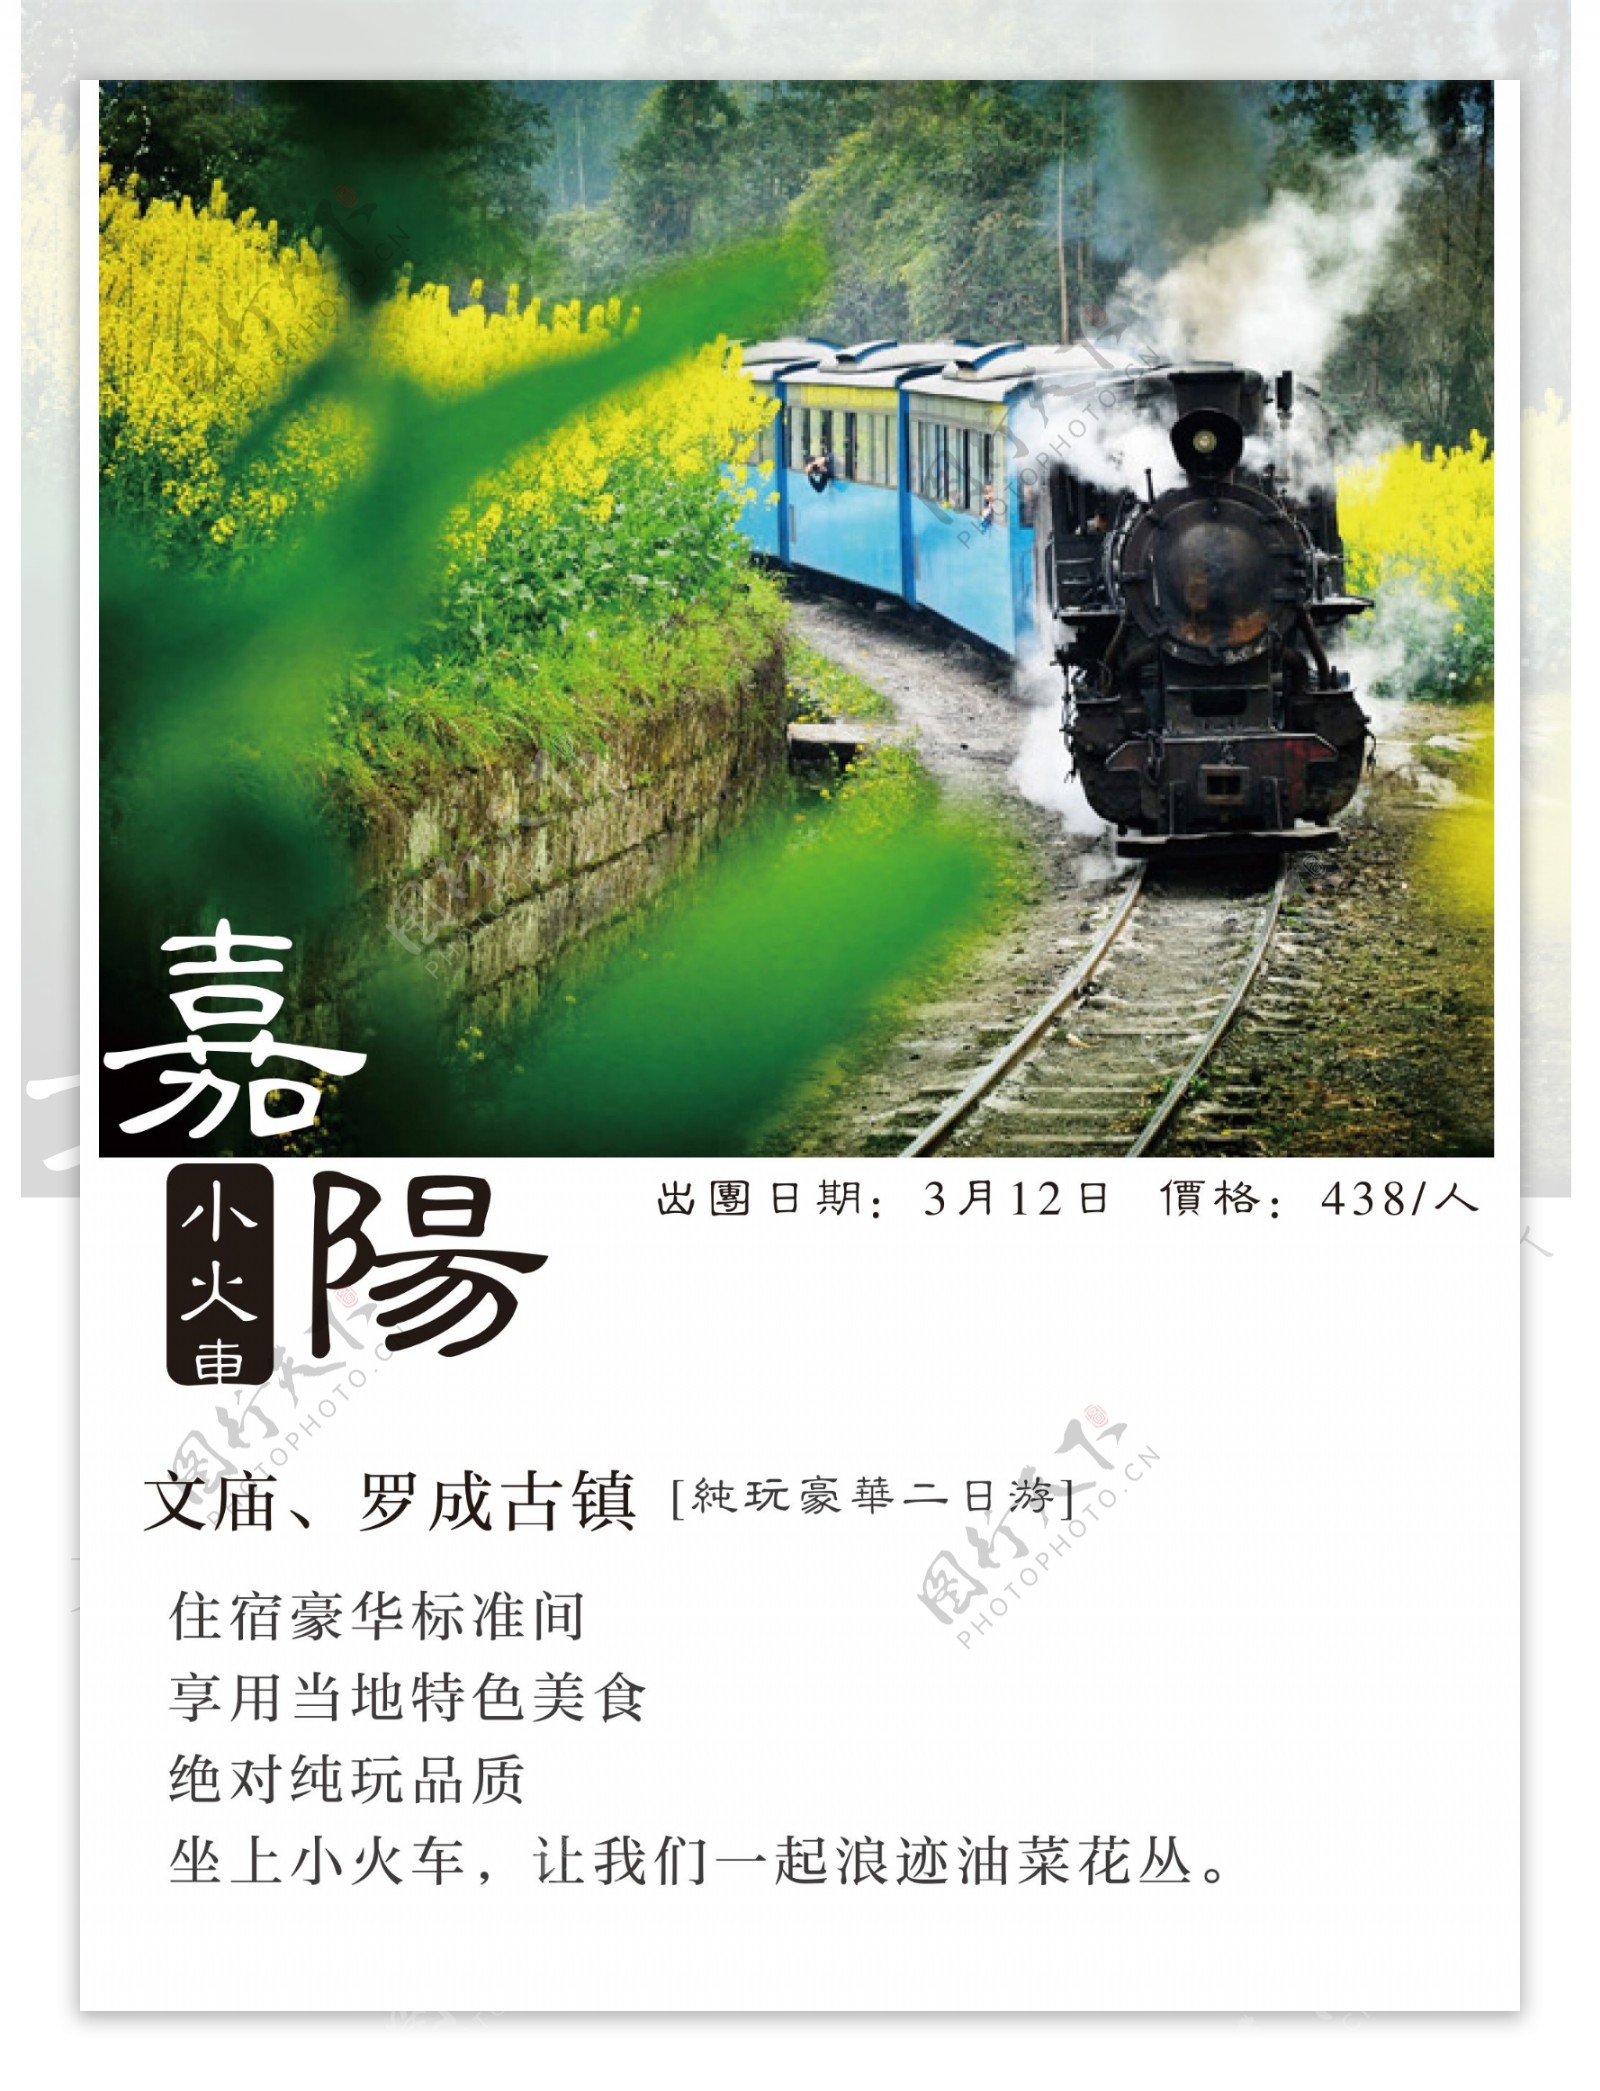 嘉阳小火车旅游海报